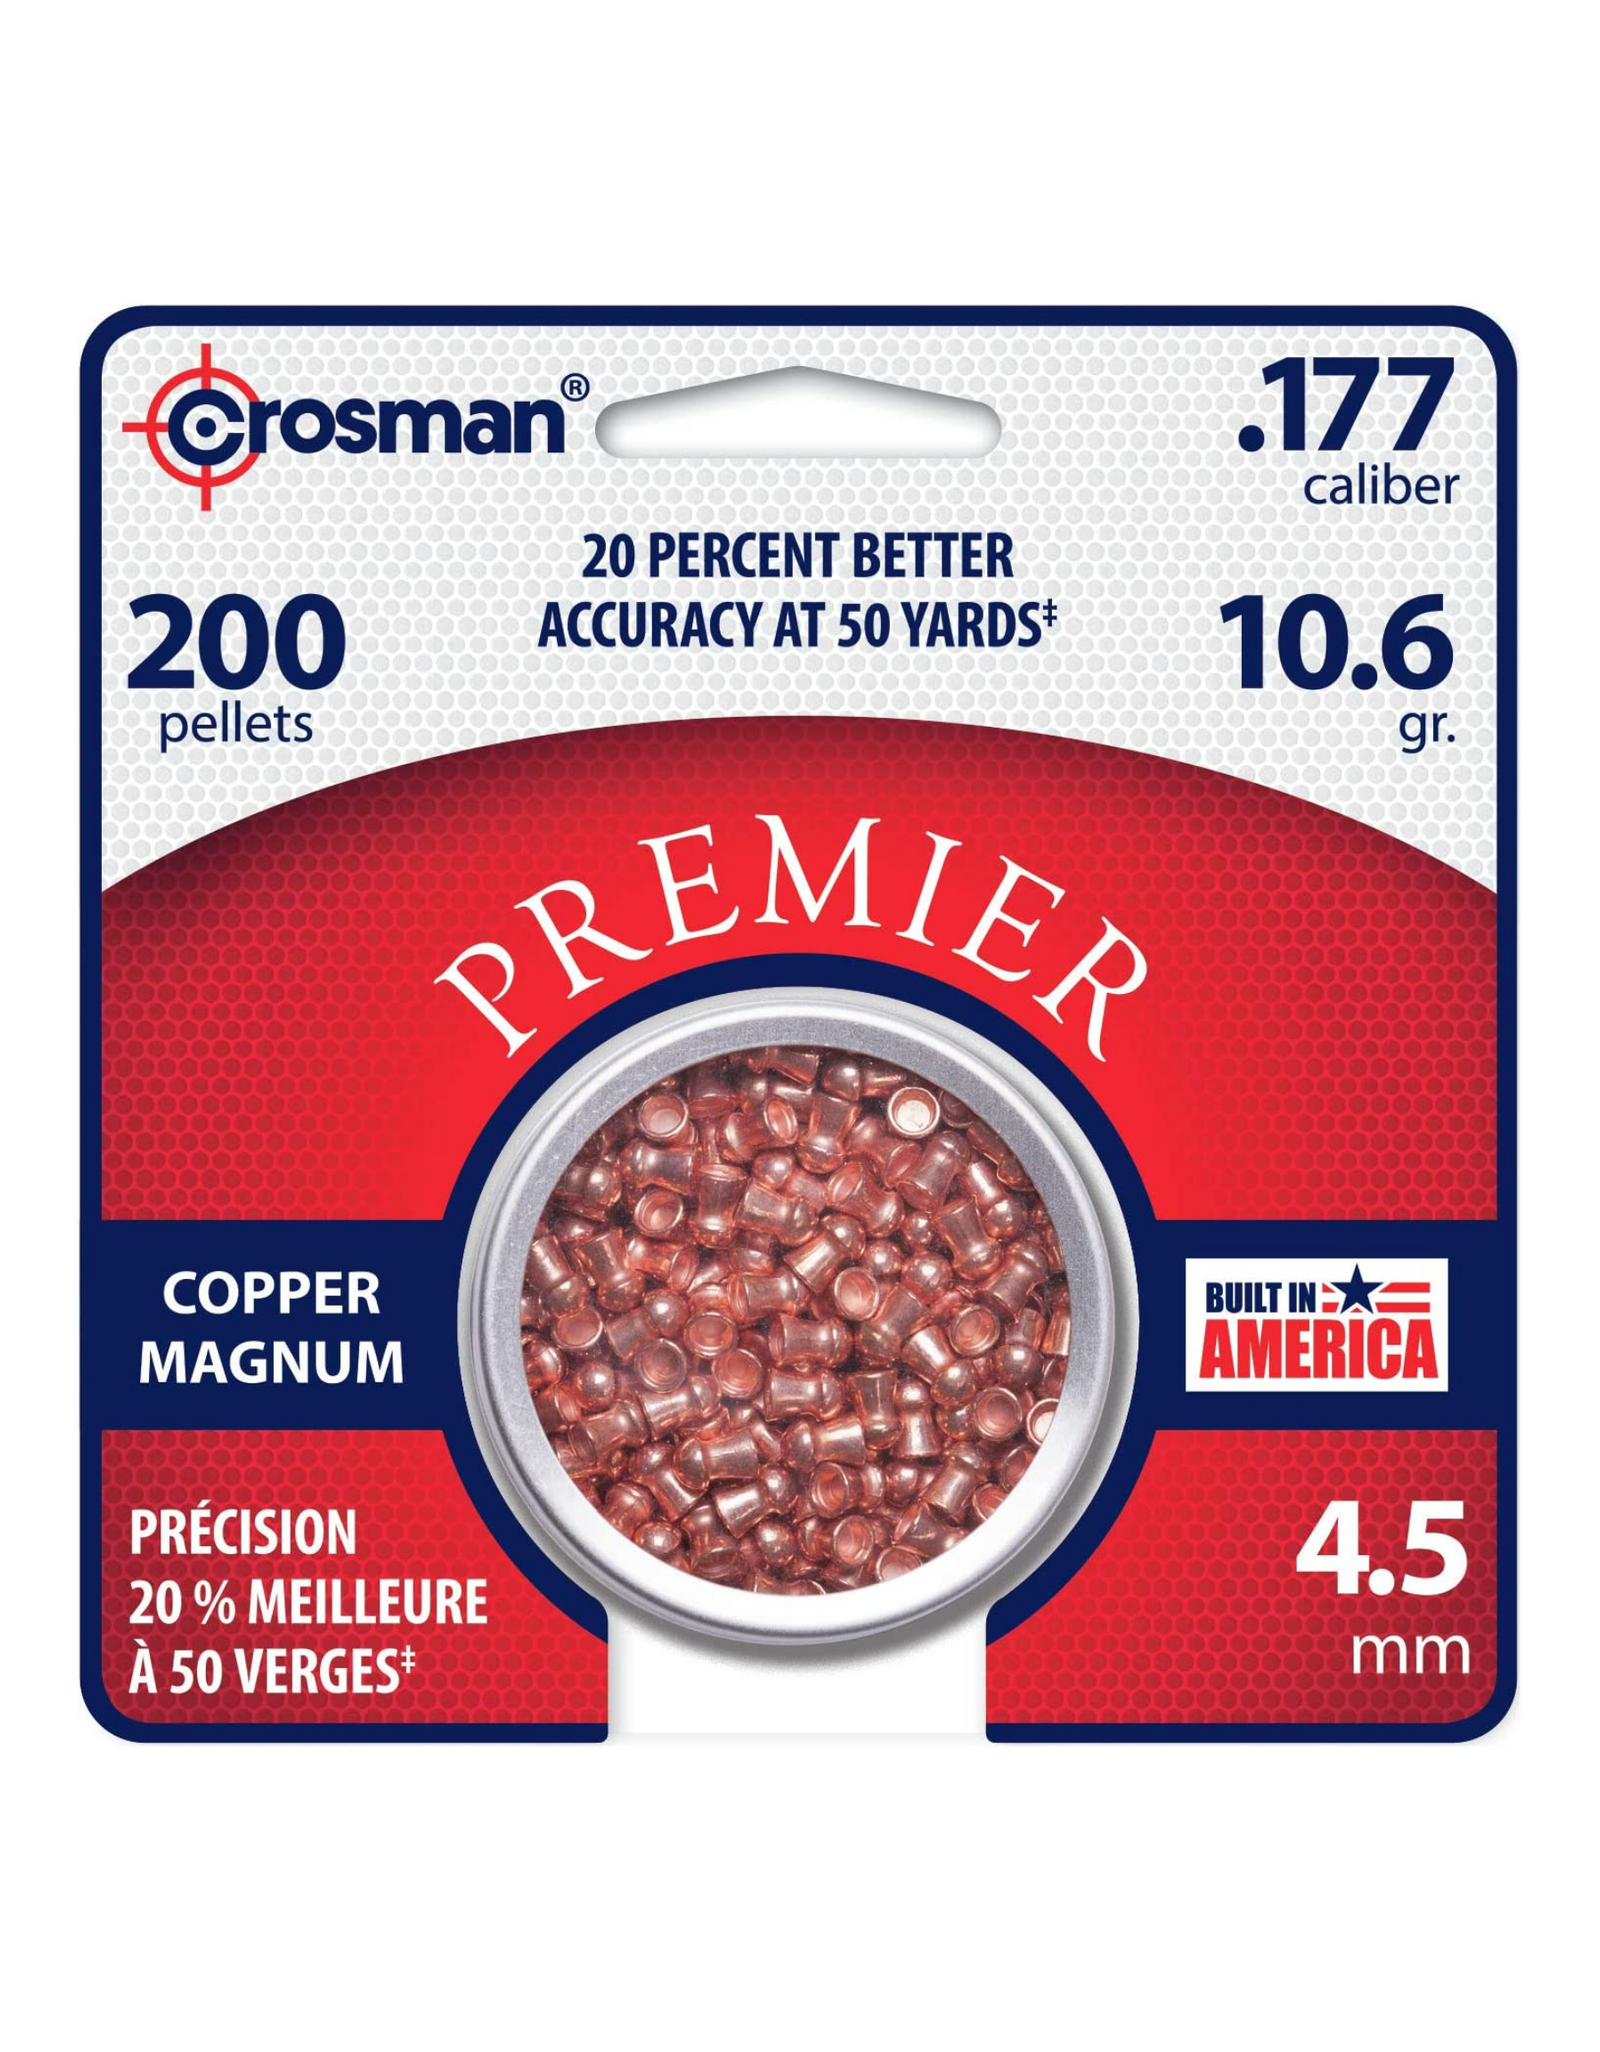 Crosman Copper Magnum Domed Pellets .177 Caliber, 10.6 Grain (200 Count)